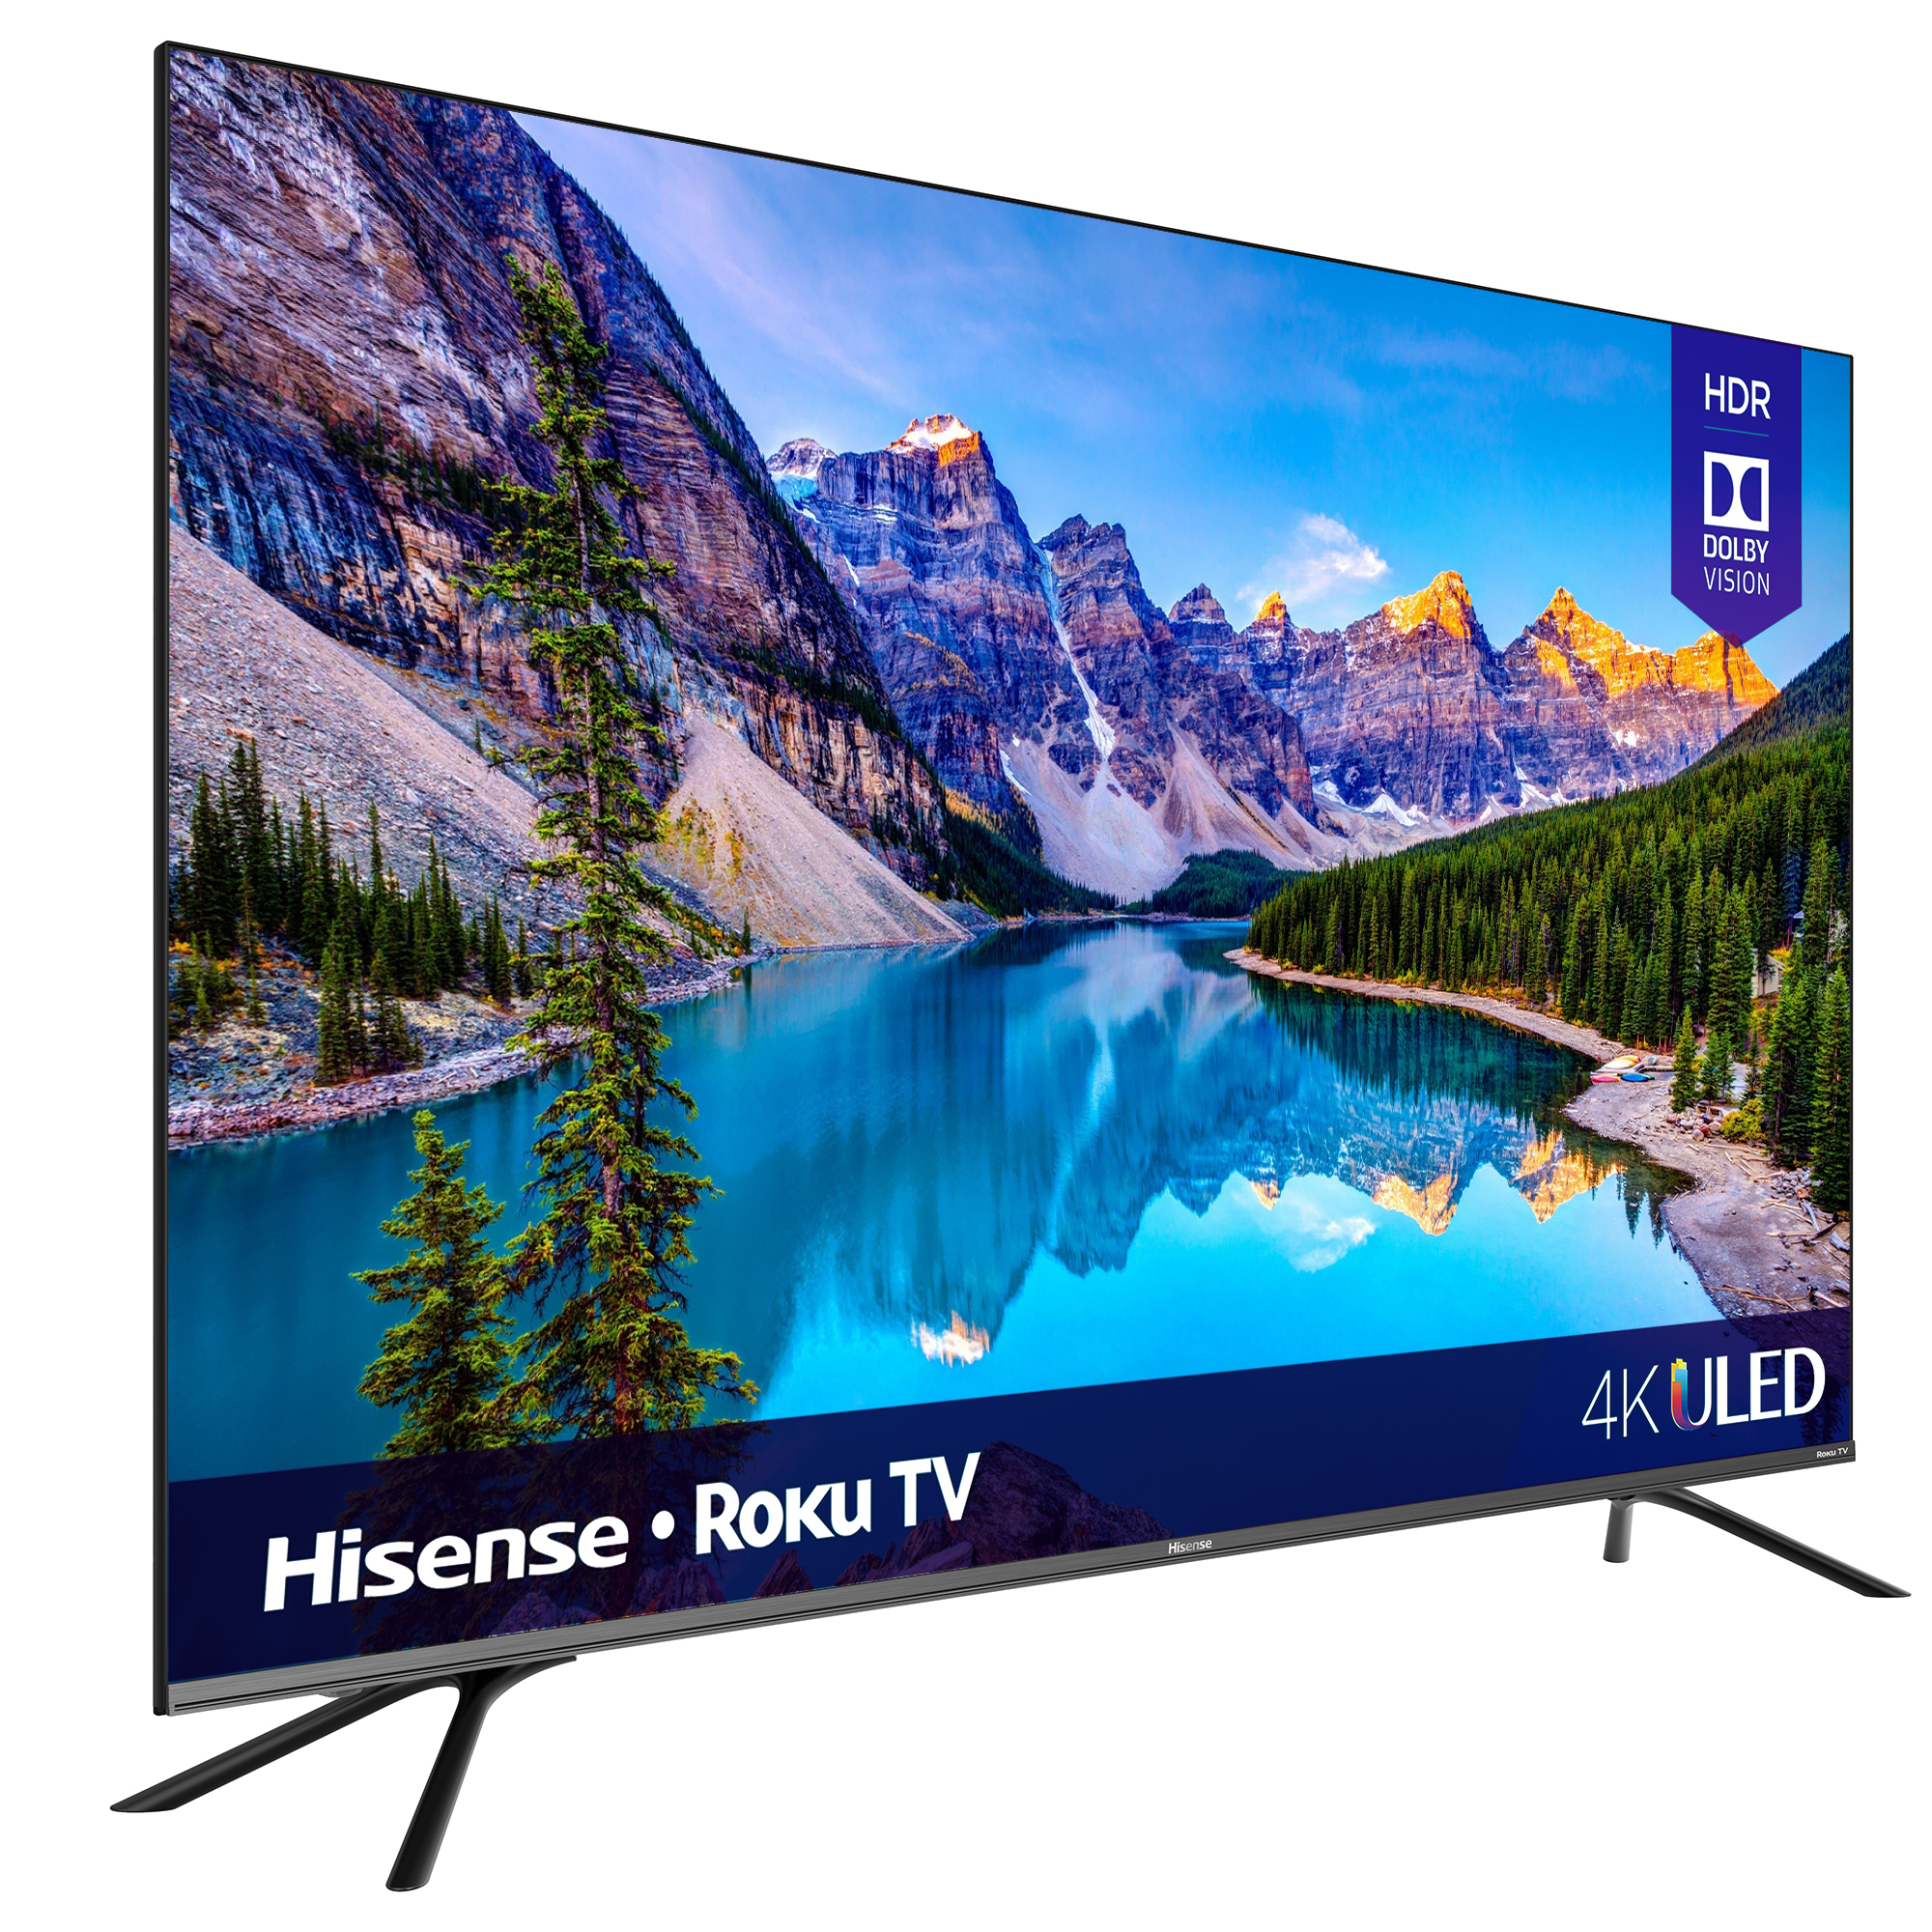 Hisense 55" Class 4K UHD LED Roku Smart TV HDR 55R8F - image 3 of 8